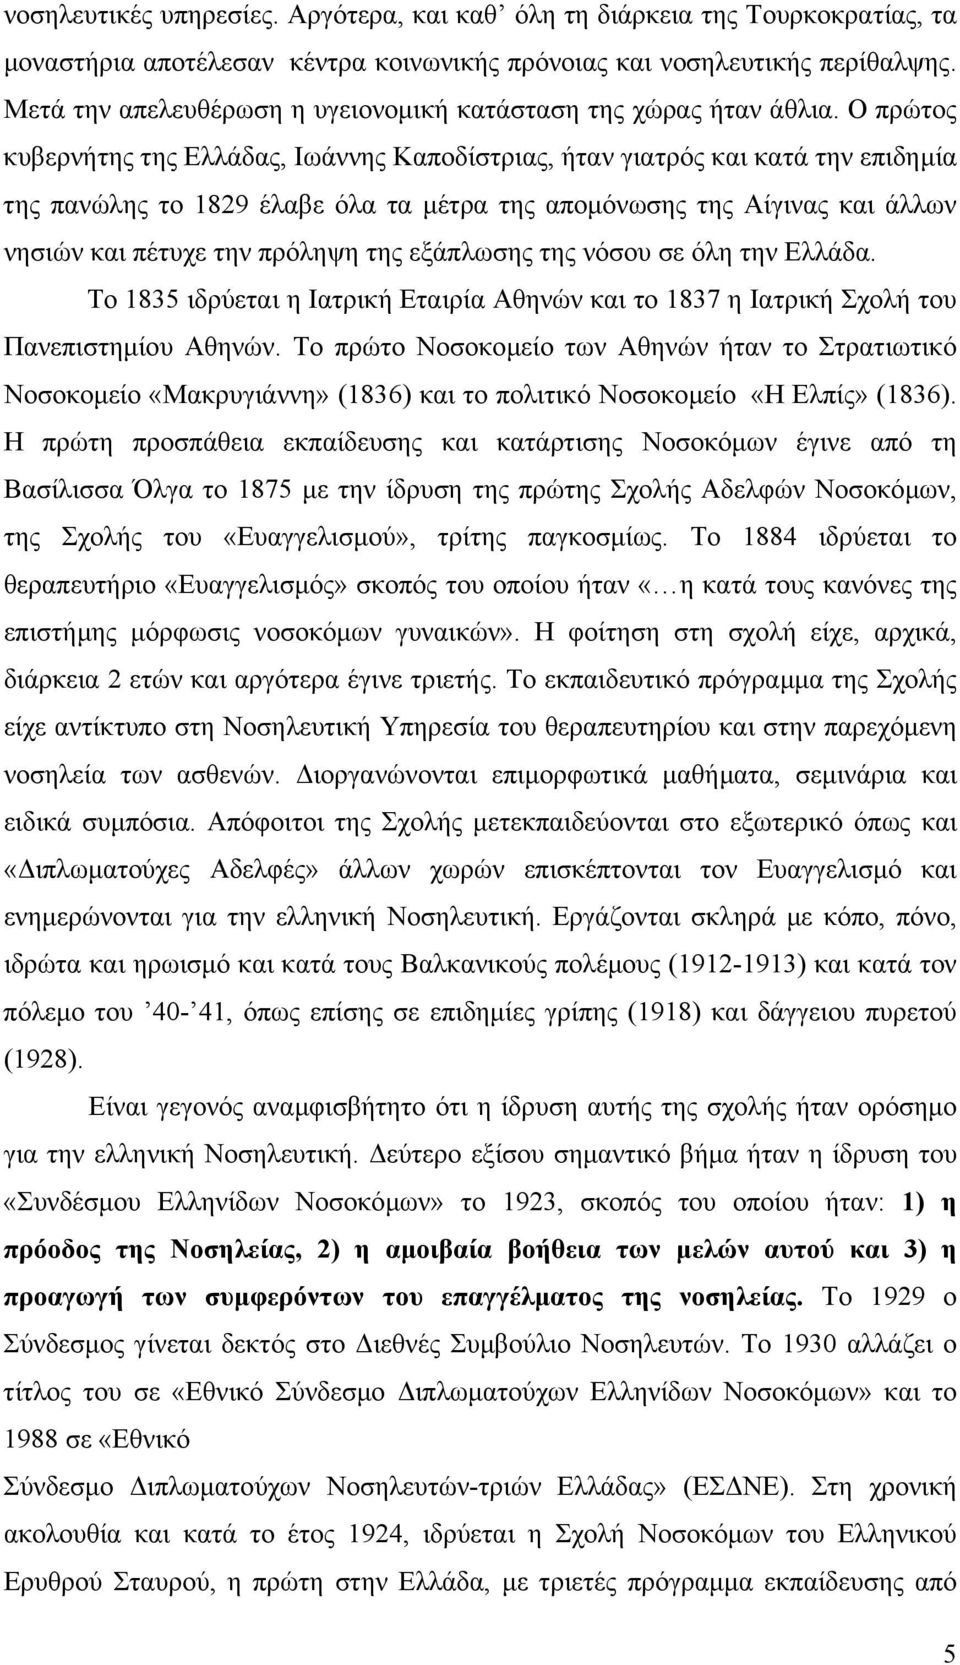 Ο πρώτος κυβερνήτης της Ελλάδας, Ιωάννης Καποδίστριας, ήταν γιατρός και κατά την επιδηµία της πανώλης το 1829 έλαβε όλα τα µέτρα της αποµόνωσης της Αίγινας και άλλων νησιών και πέτυχε την πρόληψη της